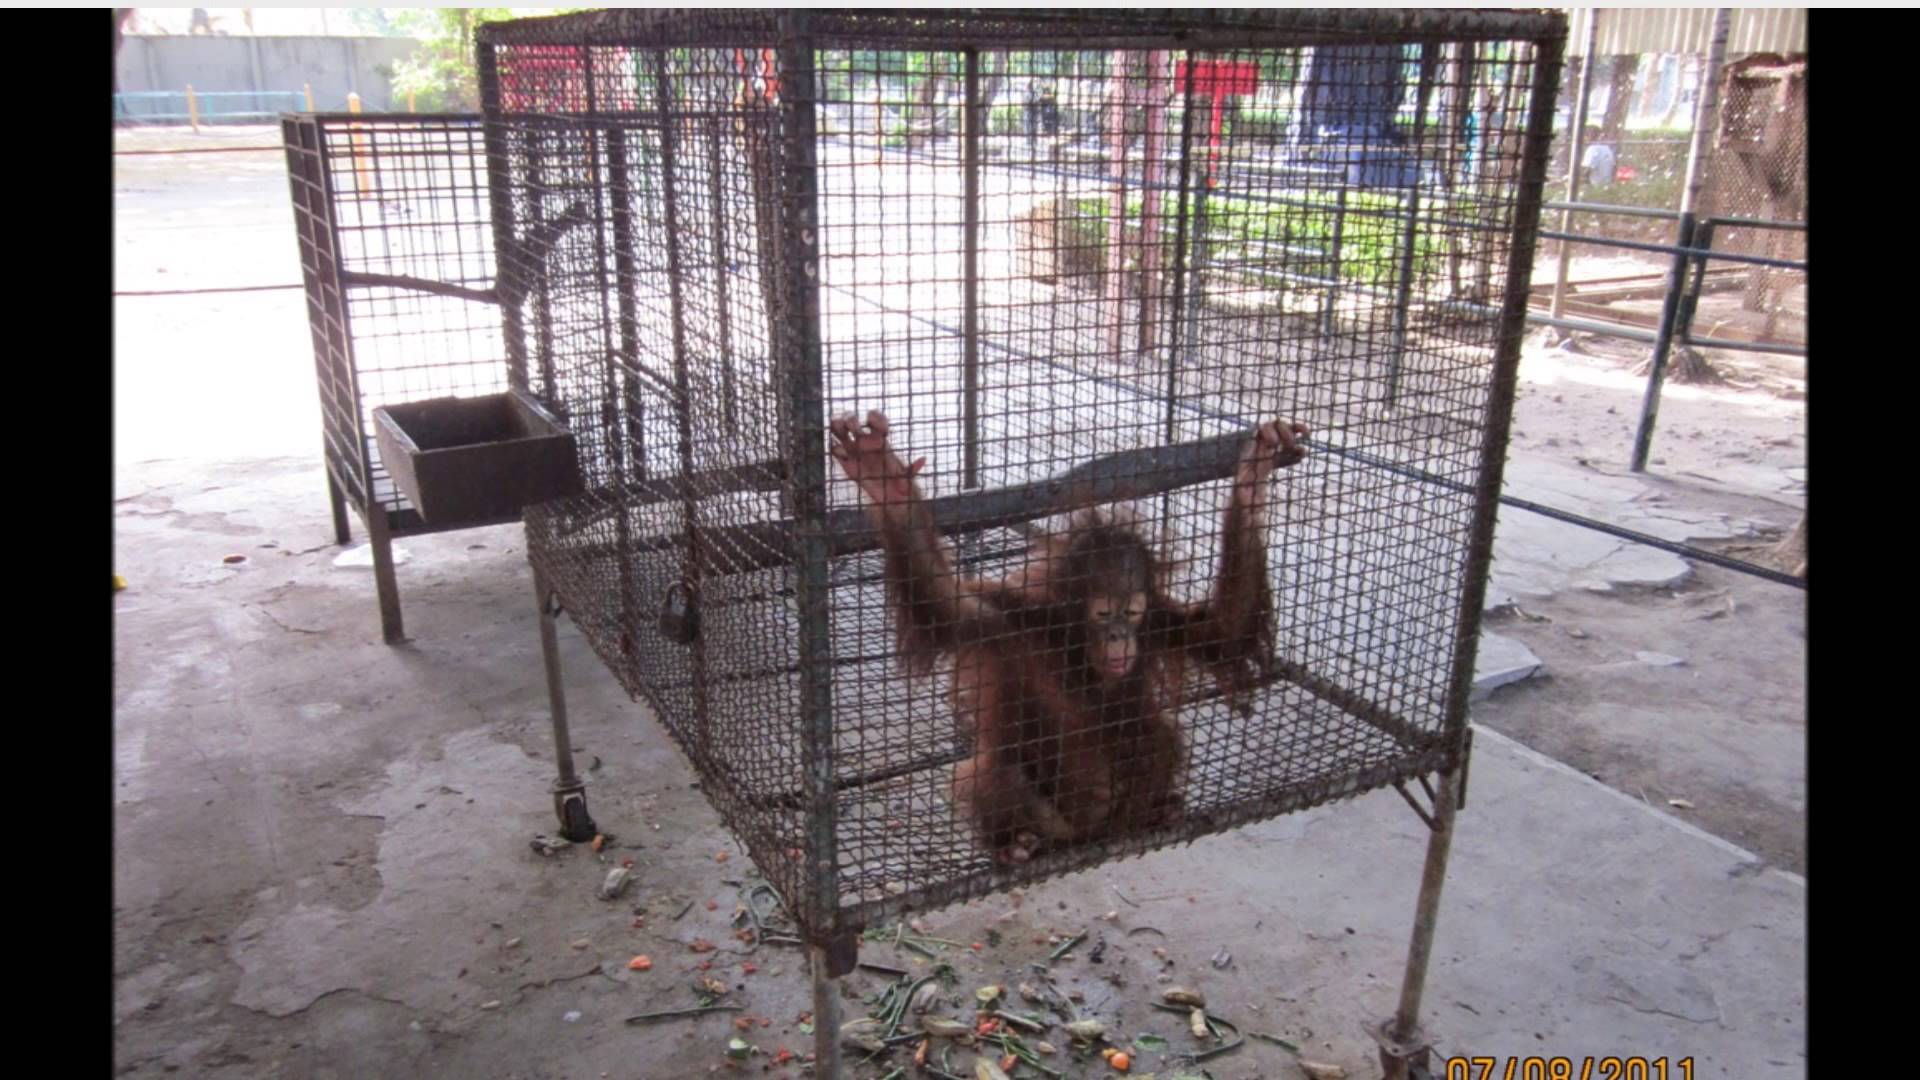 Surabaya Zoo cruelty (Somewhat Graphic) - YouTube